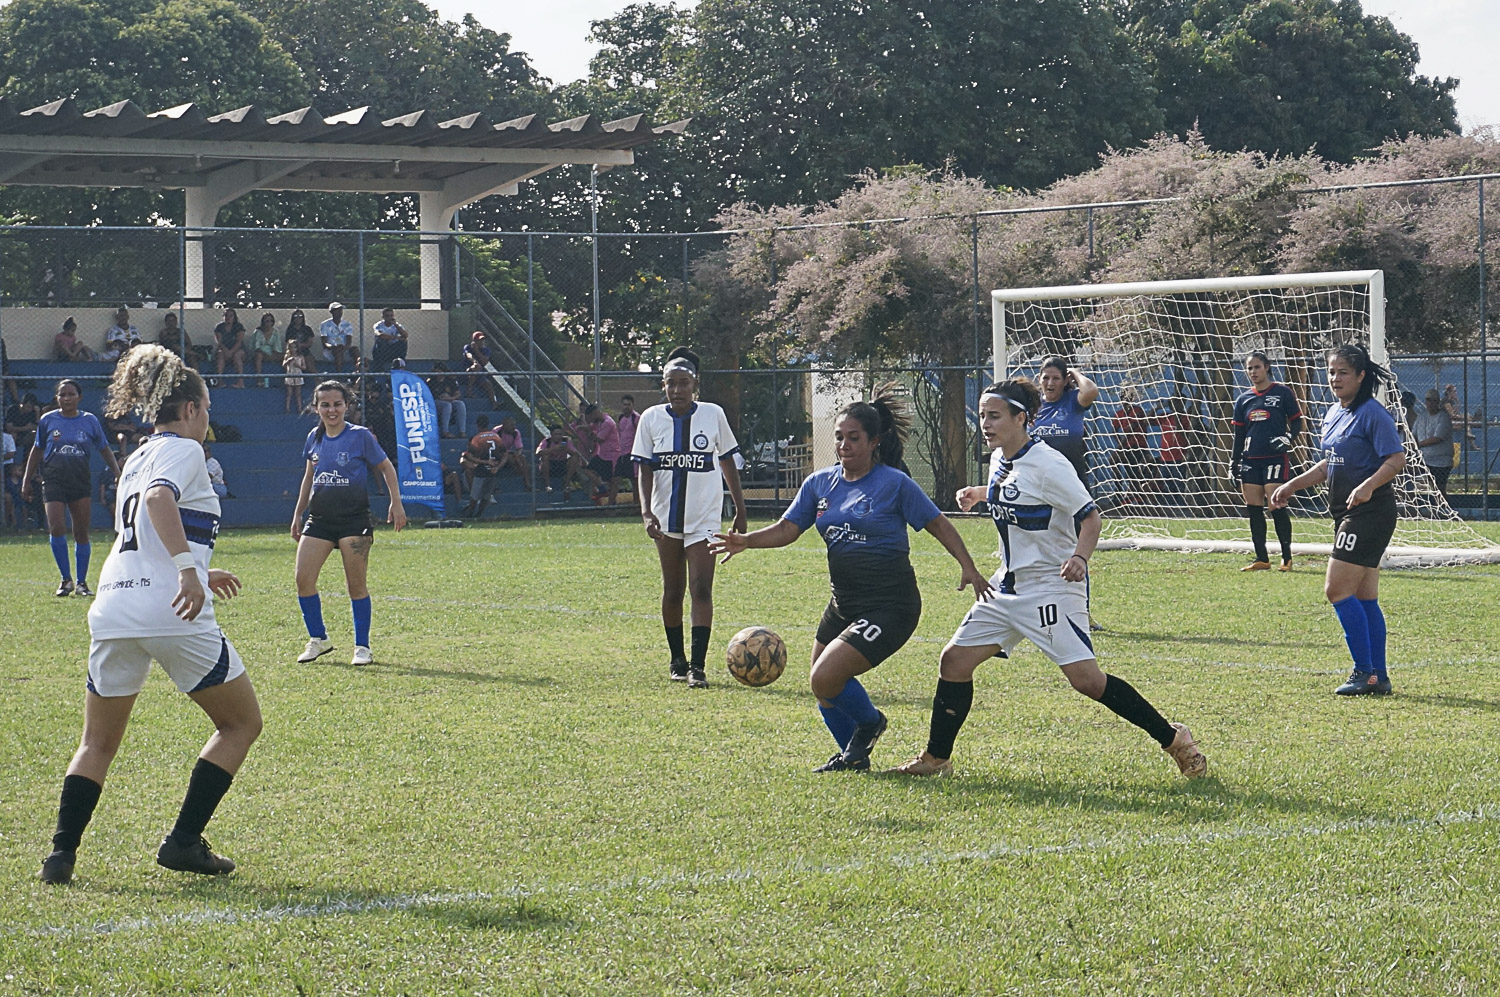 Estimulando o esporte, Prefeitura promove a 3ª Copa Campo Grande de Futebol Amador